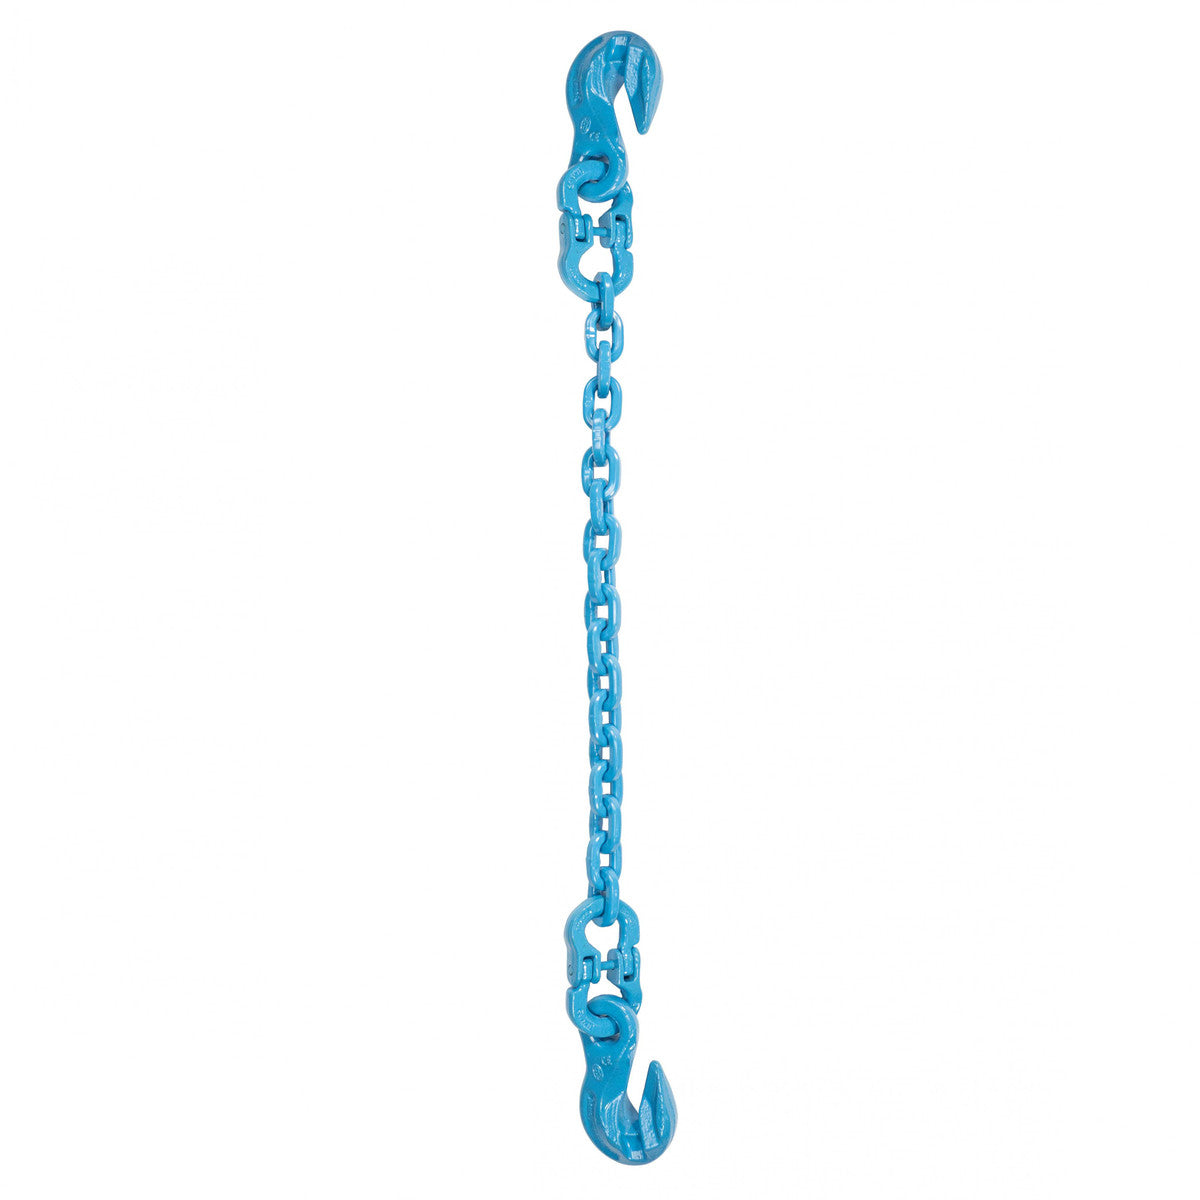 3/8" x 14' - Pewag Single Leg Chain Sling w/ Grab & Grab Hooks - Grade 120